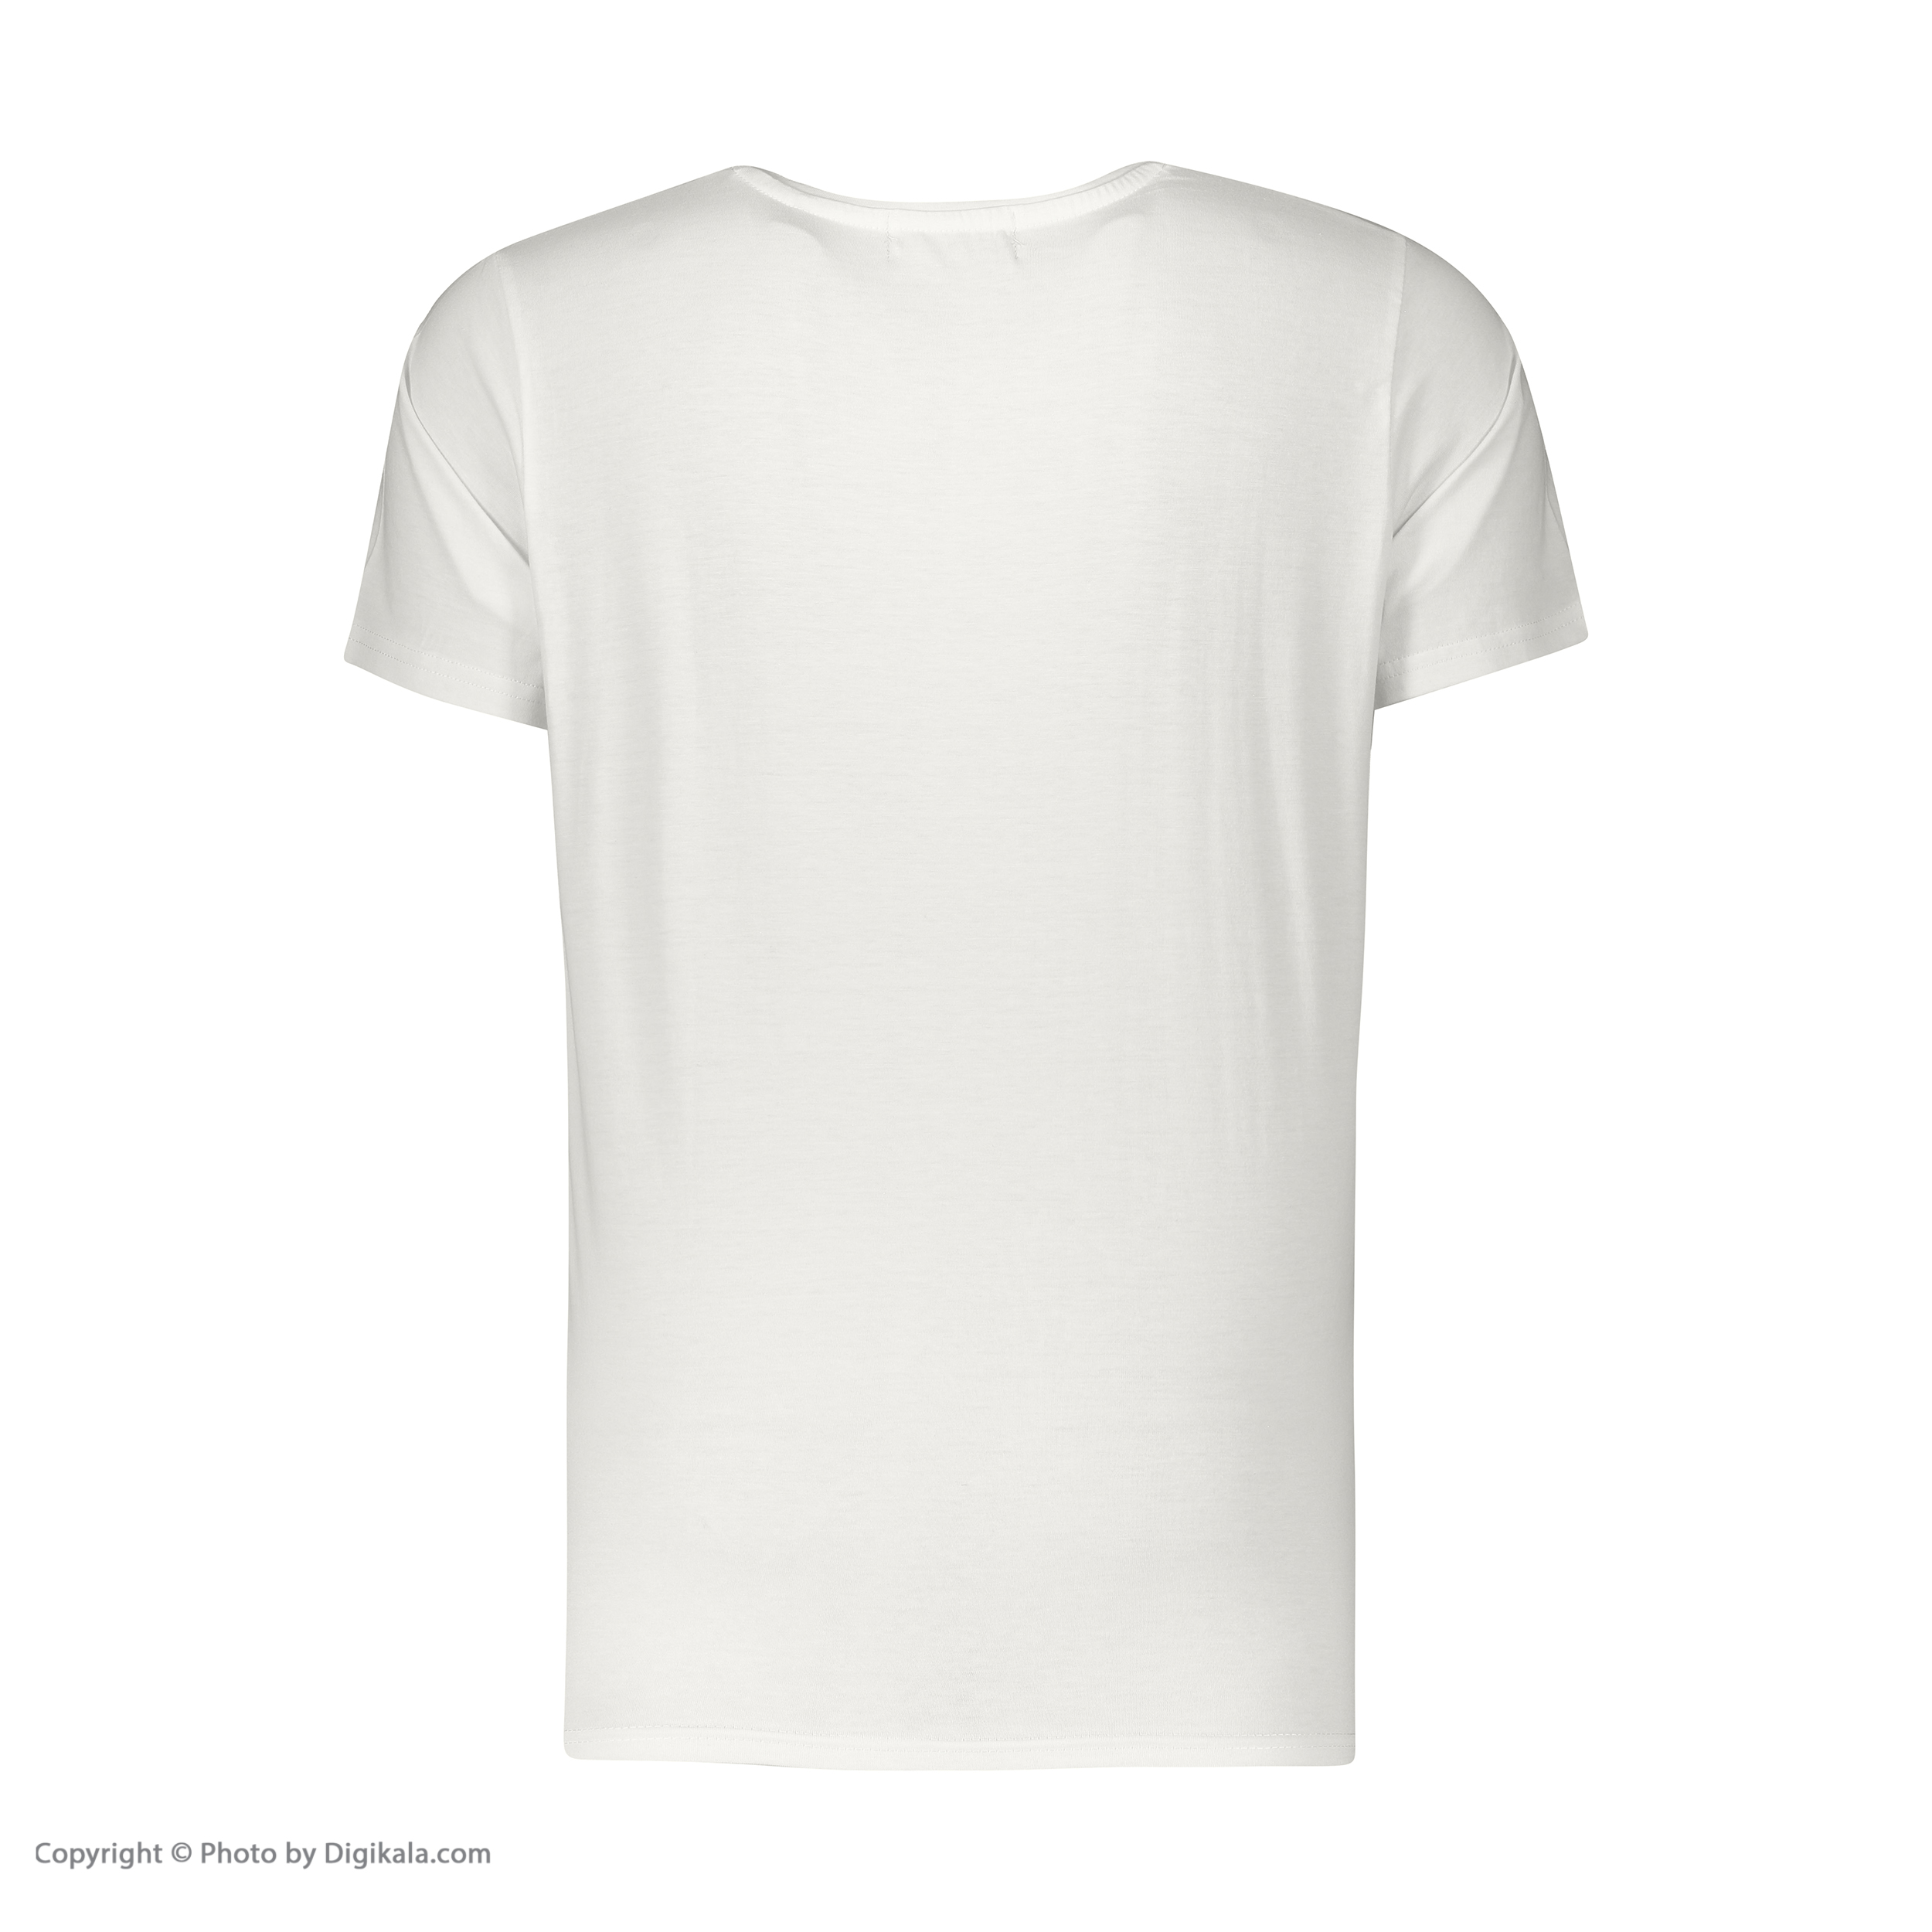 تی شرت آستین کوتاه مردانه اکزاترس مدل P032001001370100-001 -  - 3